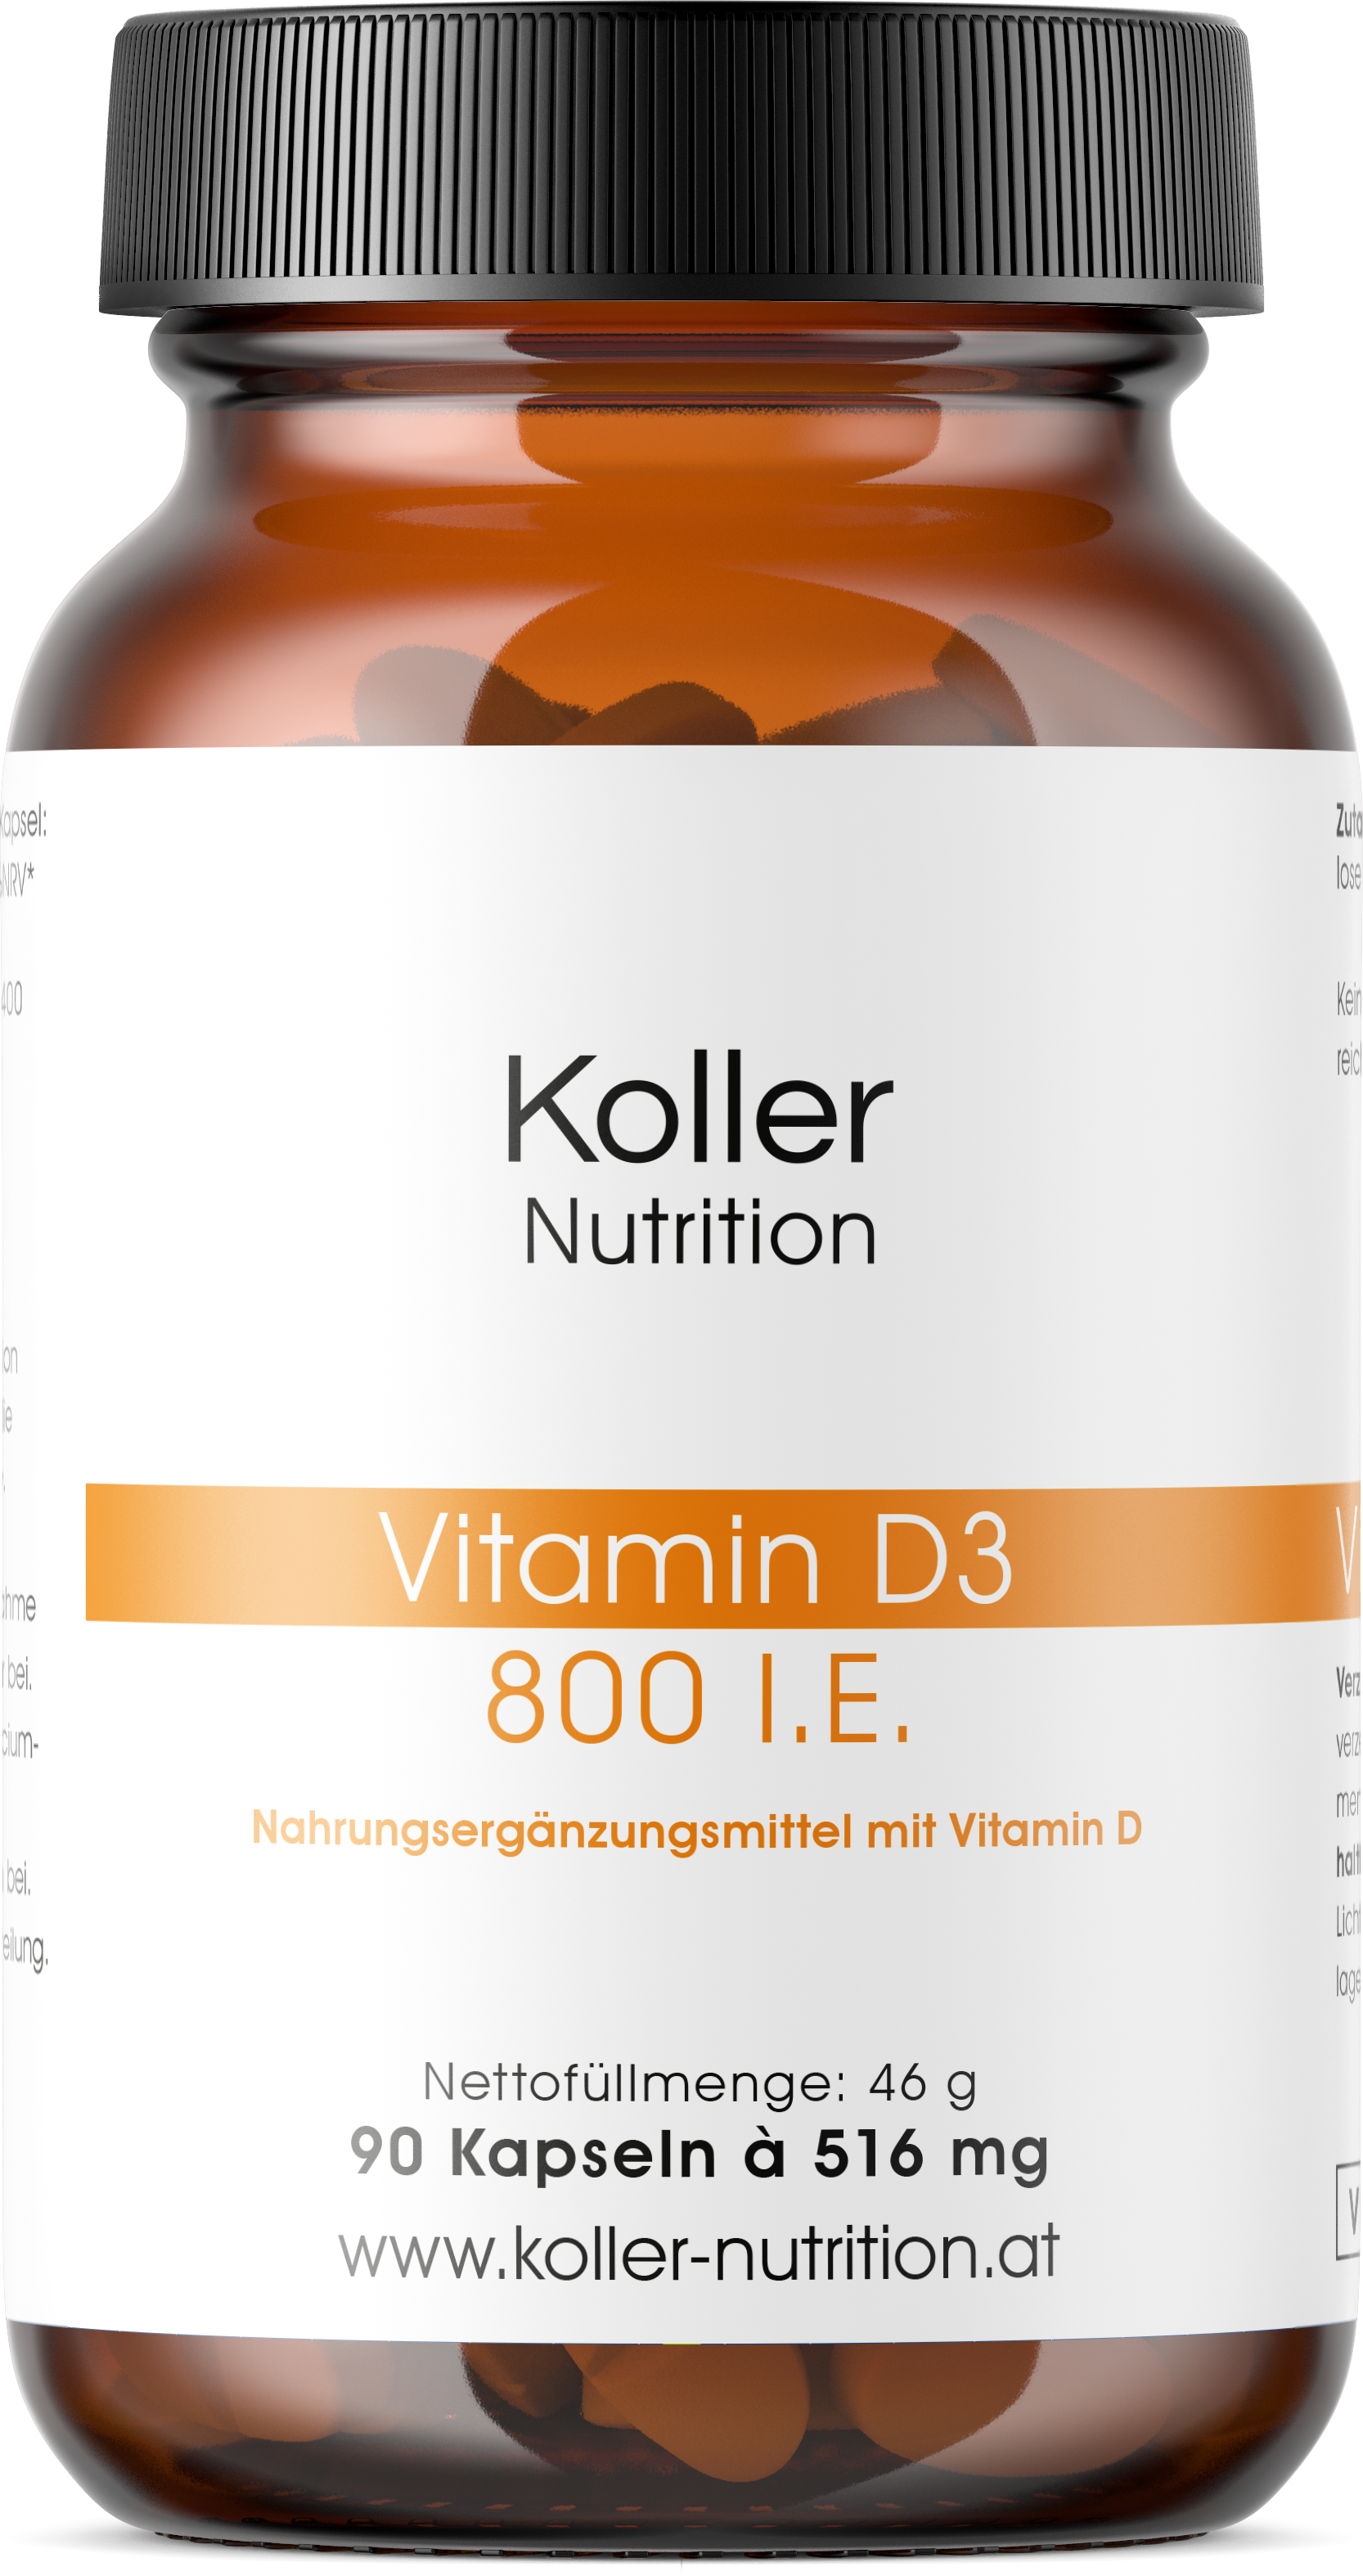 Vitamin D3 (00 ie, Koller Nutrition